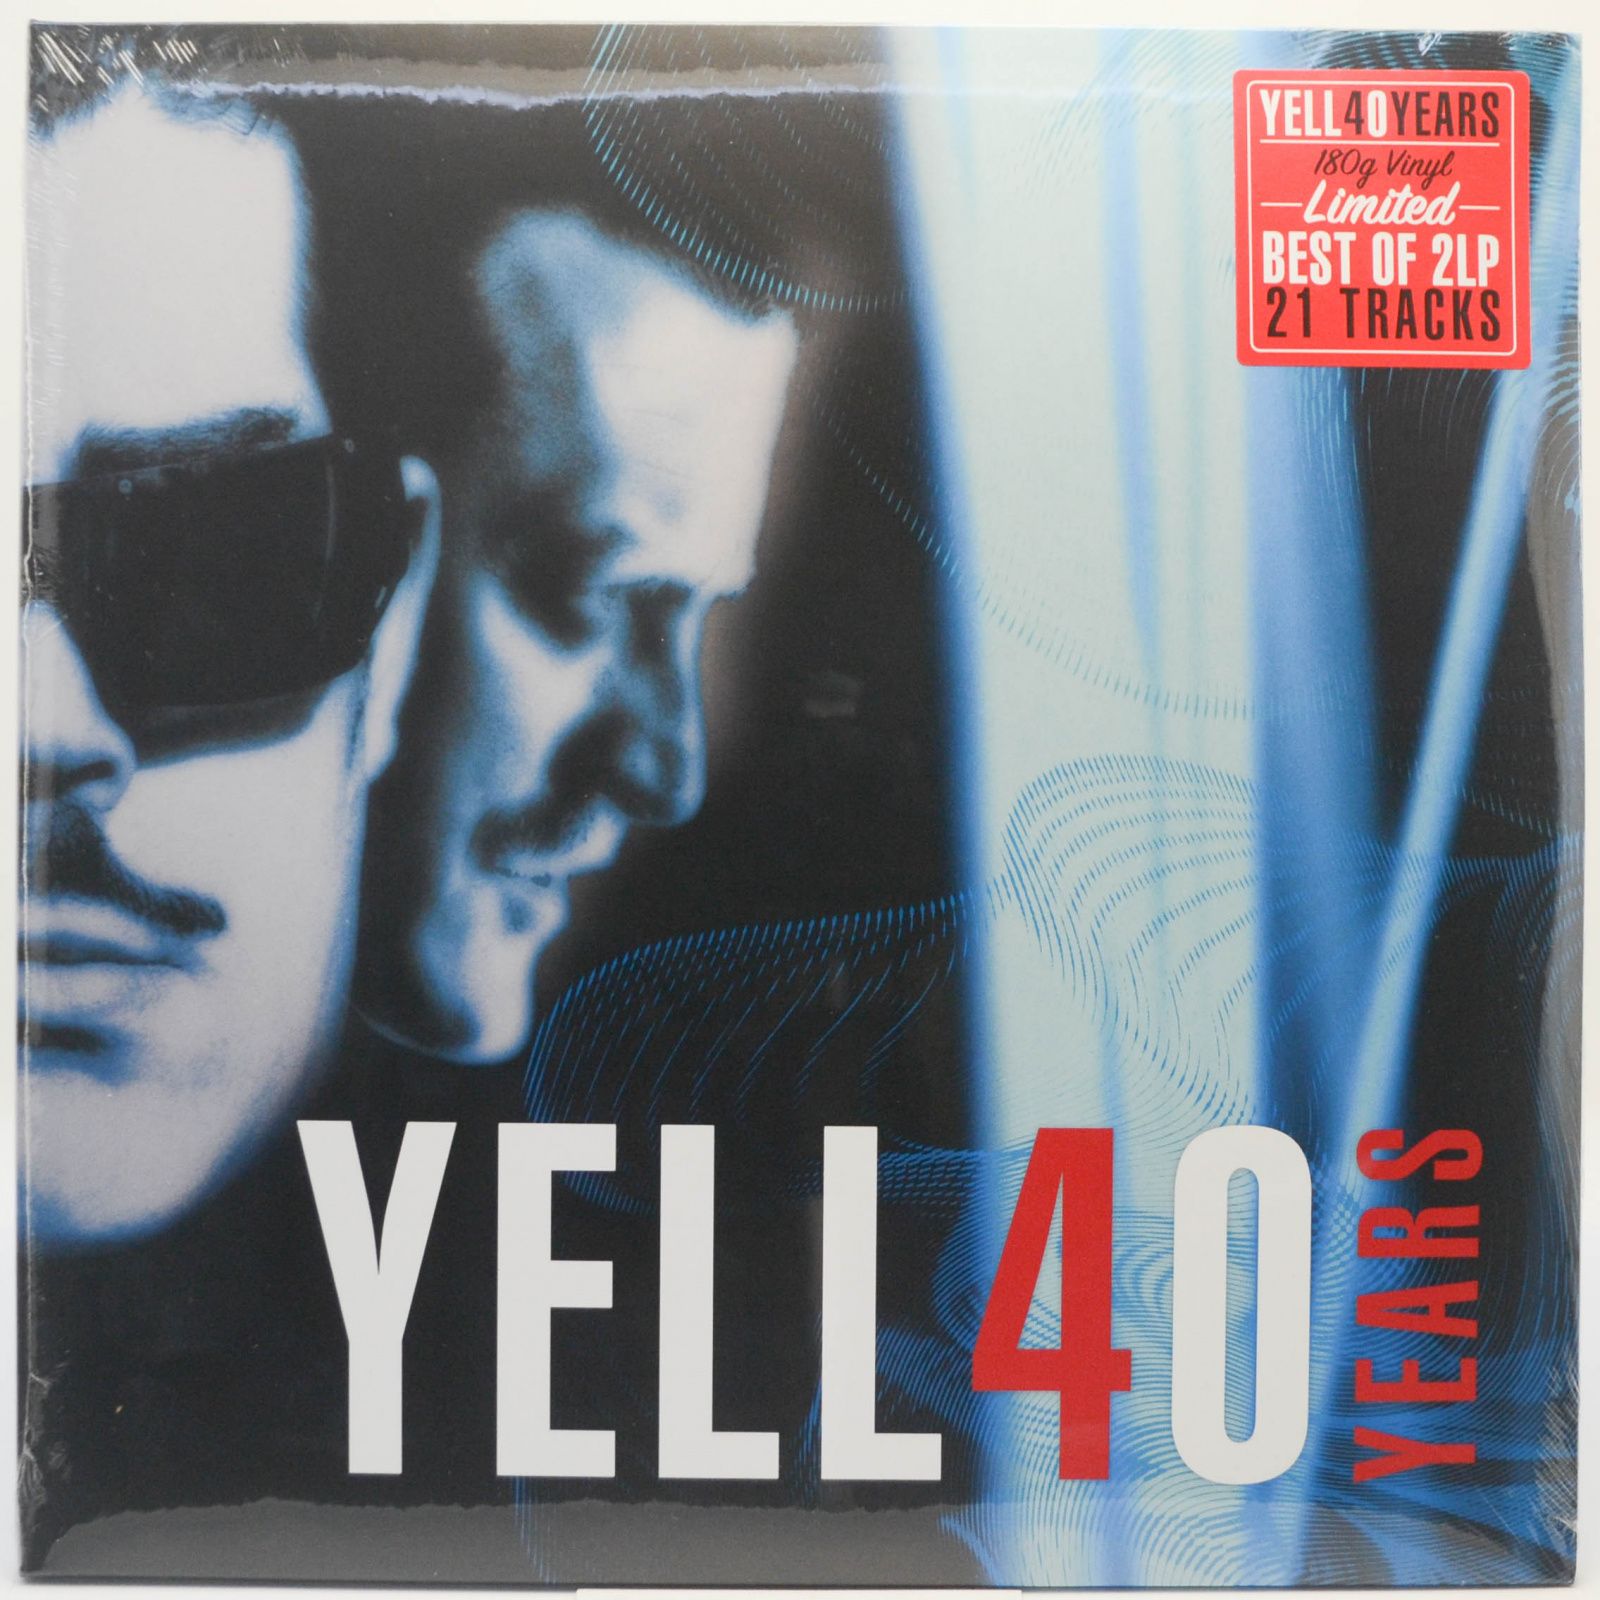 Yell40 Years (2LP), 2021